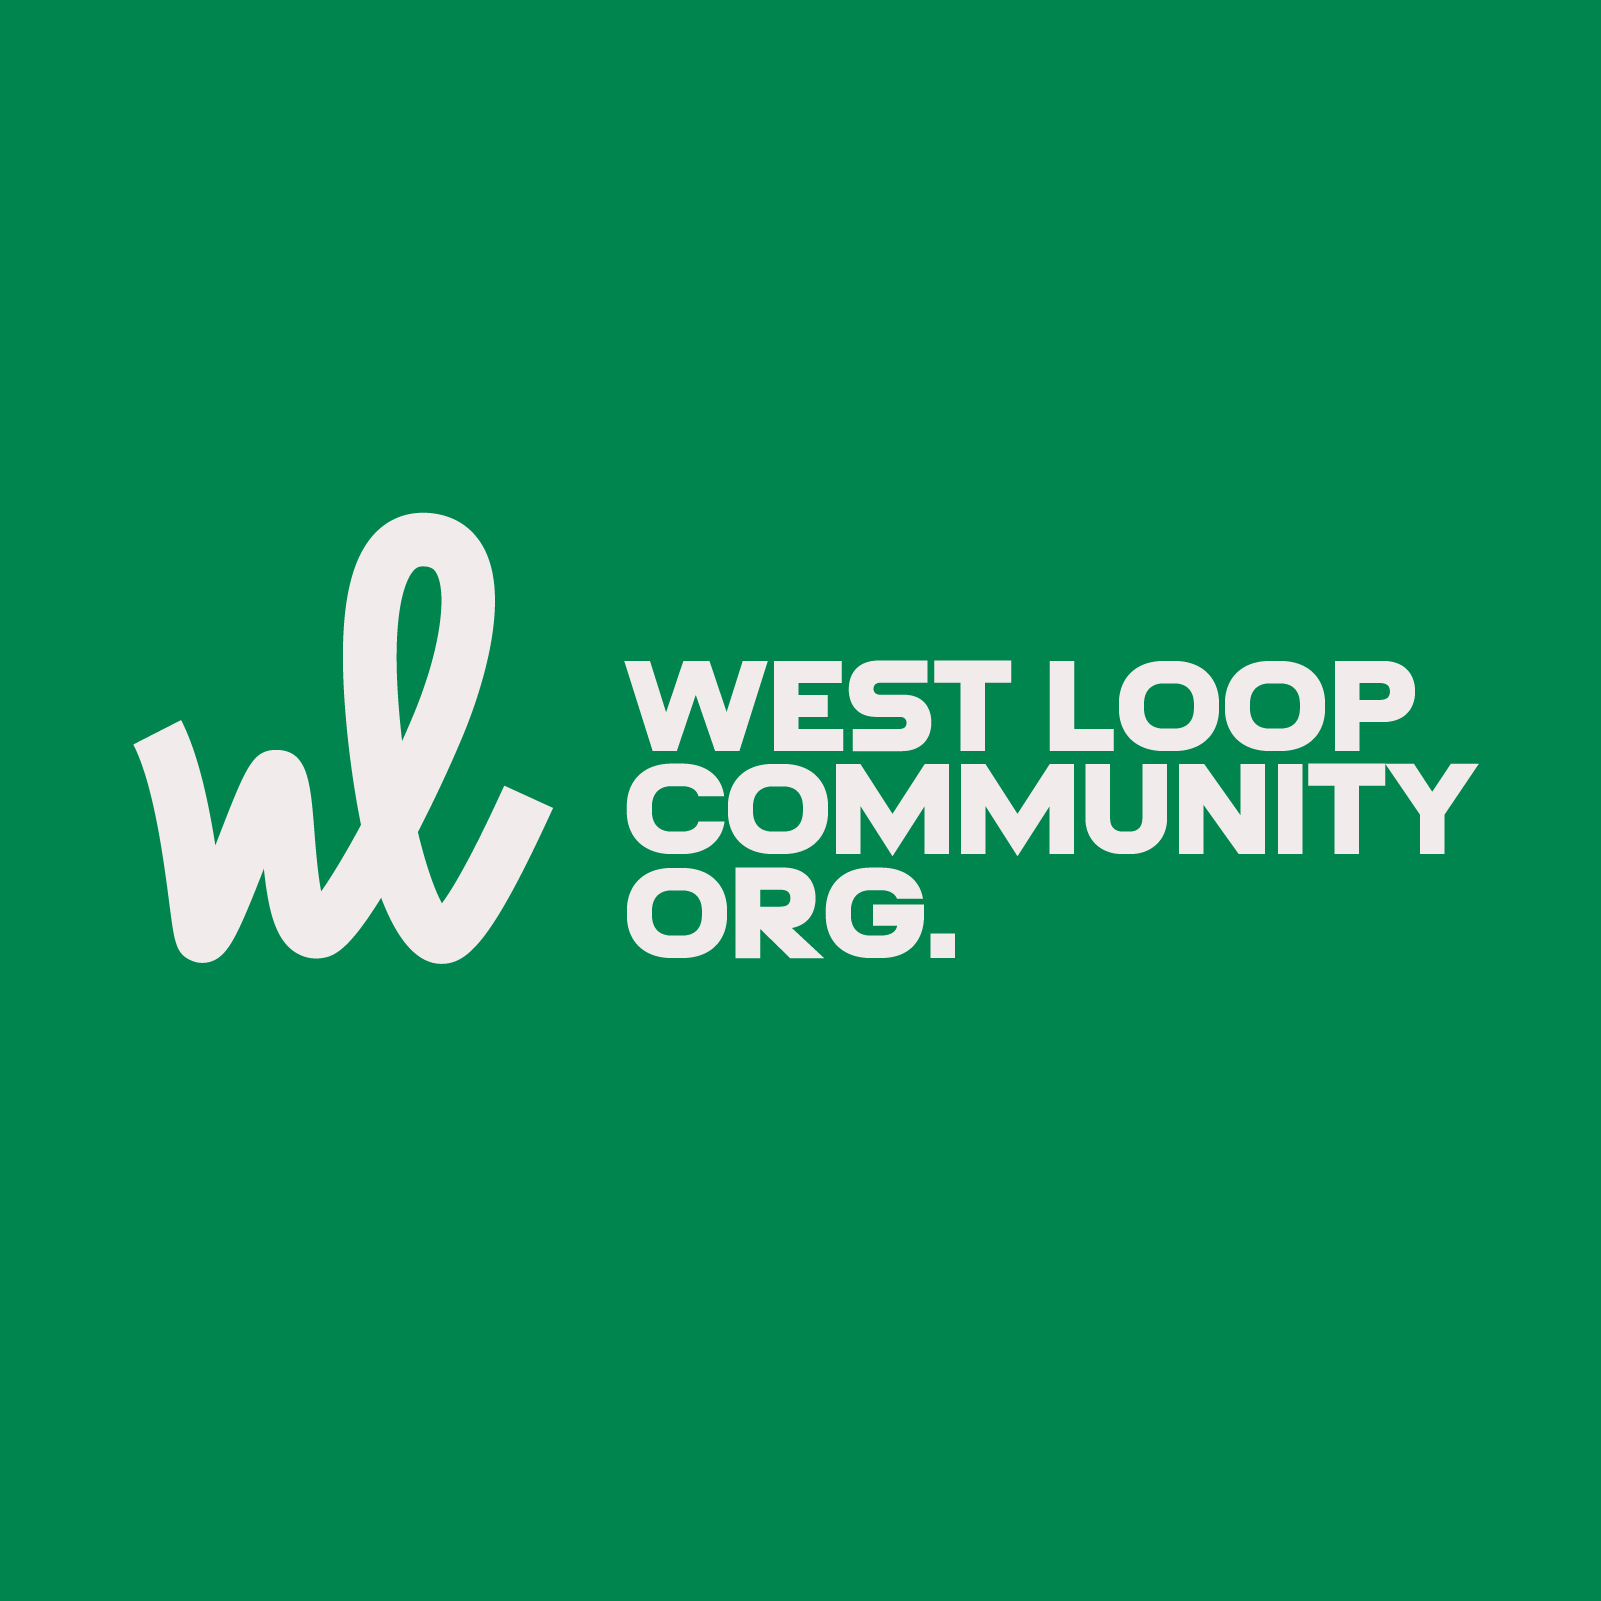 West Loop Community Org.